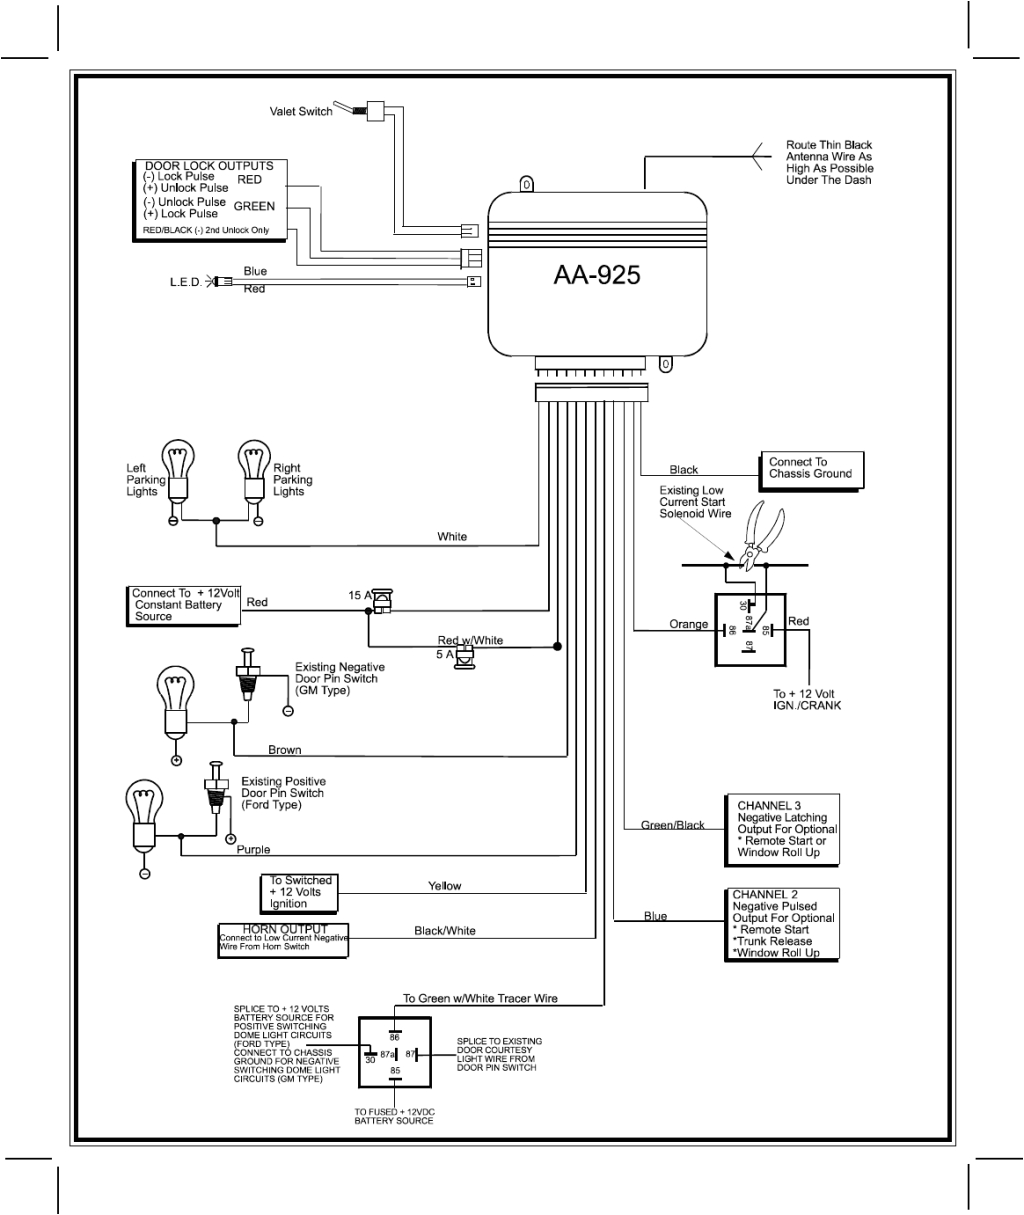 karr alarm wiring diagram wiring diagram name karr 4040a wiring diagram karr 4040a wiring diagram